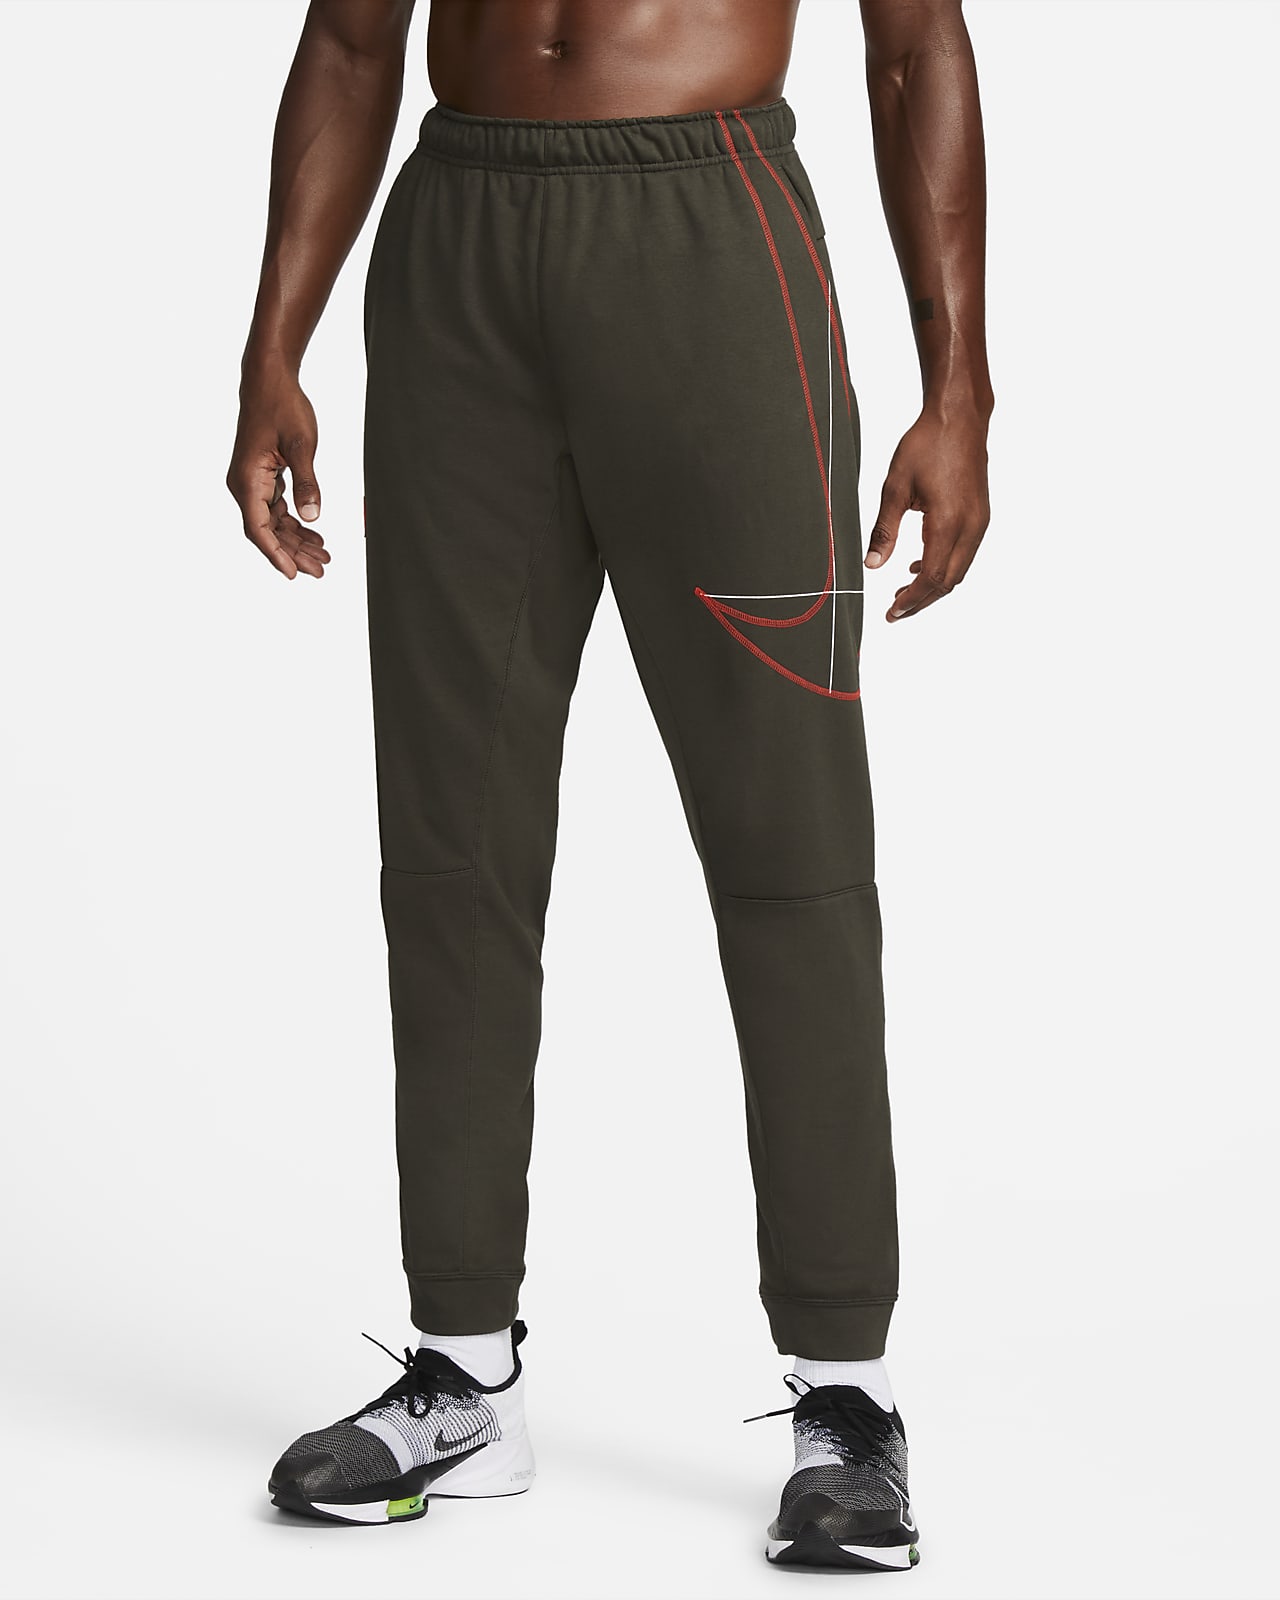 Nike Men's Tennis Woven Dri-FIT Black Pants - YouTube